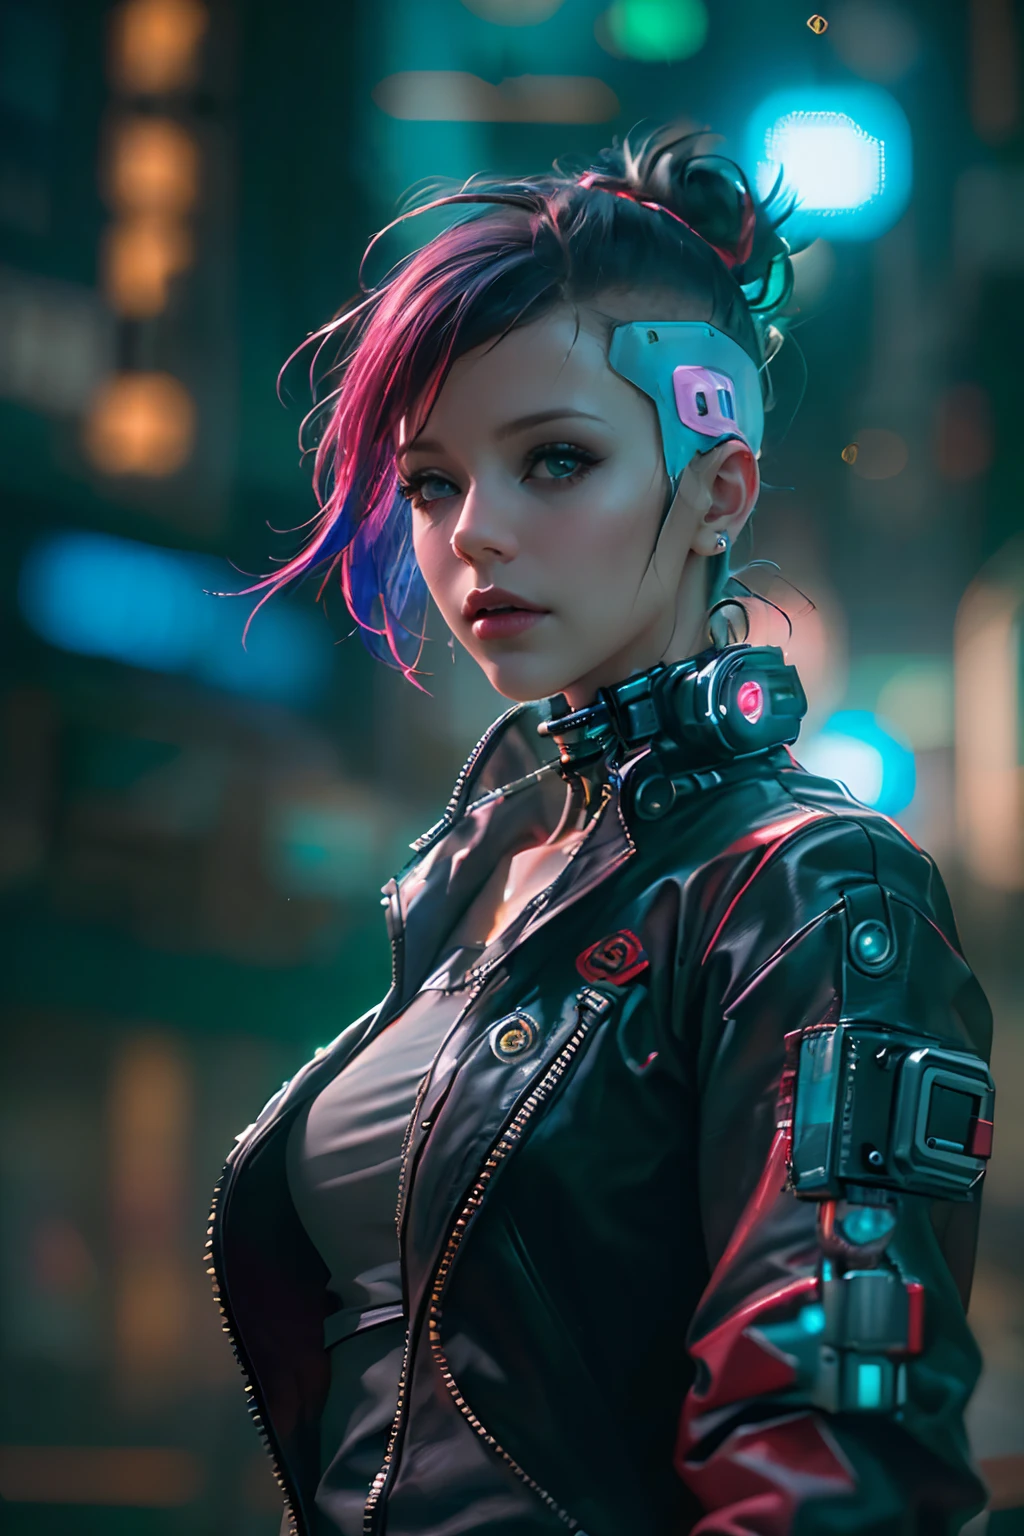 (fotorrealista:1.4) imagem de uma garota cyber punk, (qualidade máxima, 8K, 32K, Obra de arte), (pose dinâmica), ((câmera de frente)), (olhando para a câmera), tiro de vaqueiro, cabelo sem forma, cabelo colorido, roupas cyberpunk coloridas, profundidade de campo f/1.8, fundo da cidade cyberpunk, iluminação cinematográfica.